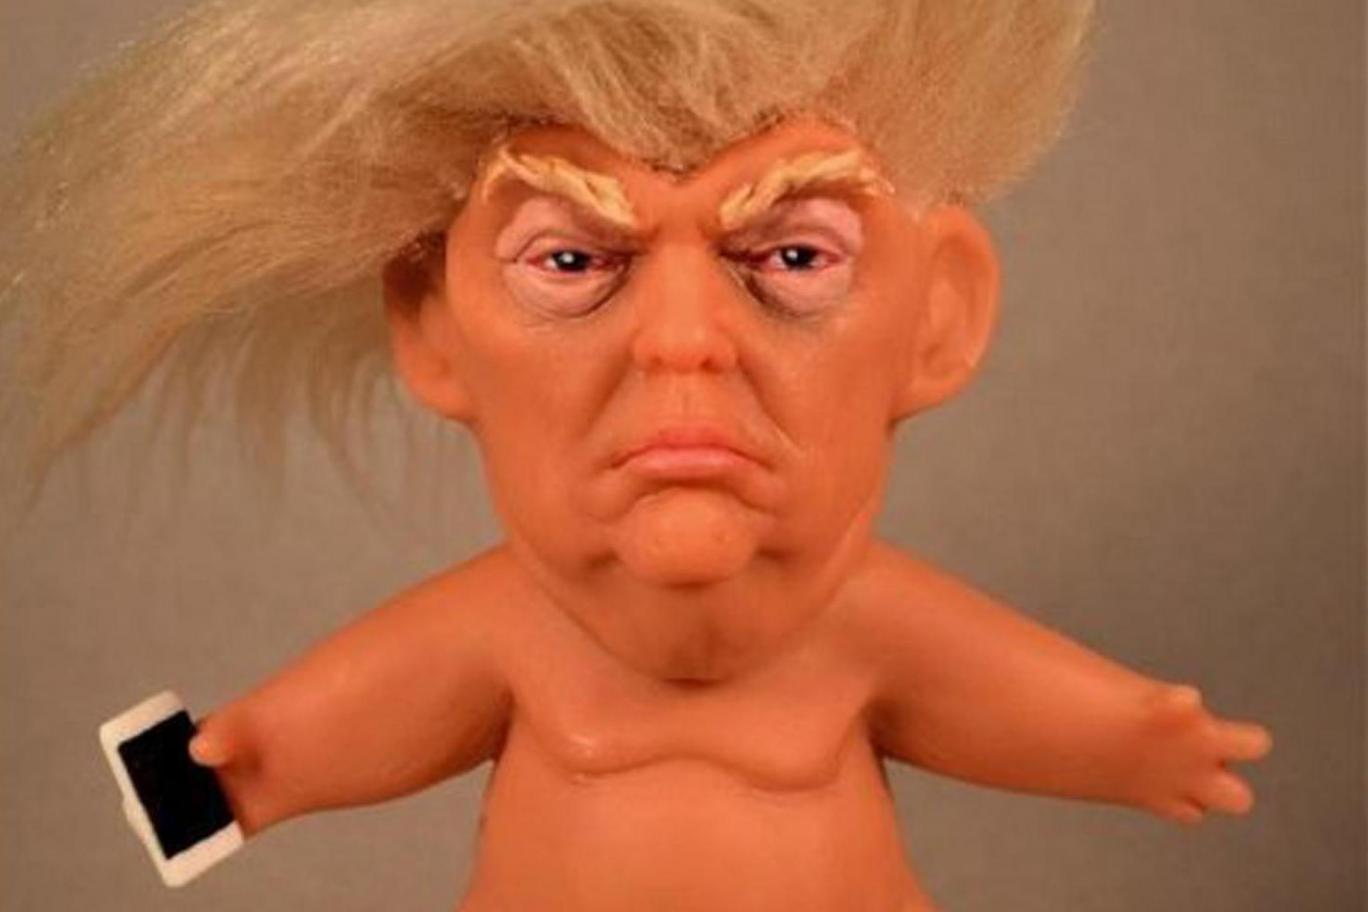 La bambola Troll con le sembianze di Donald Trump